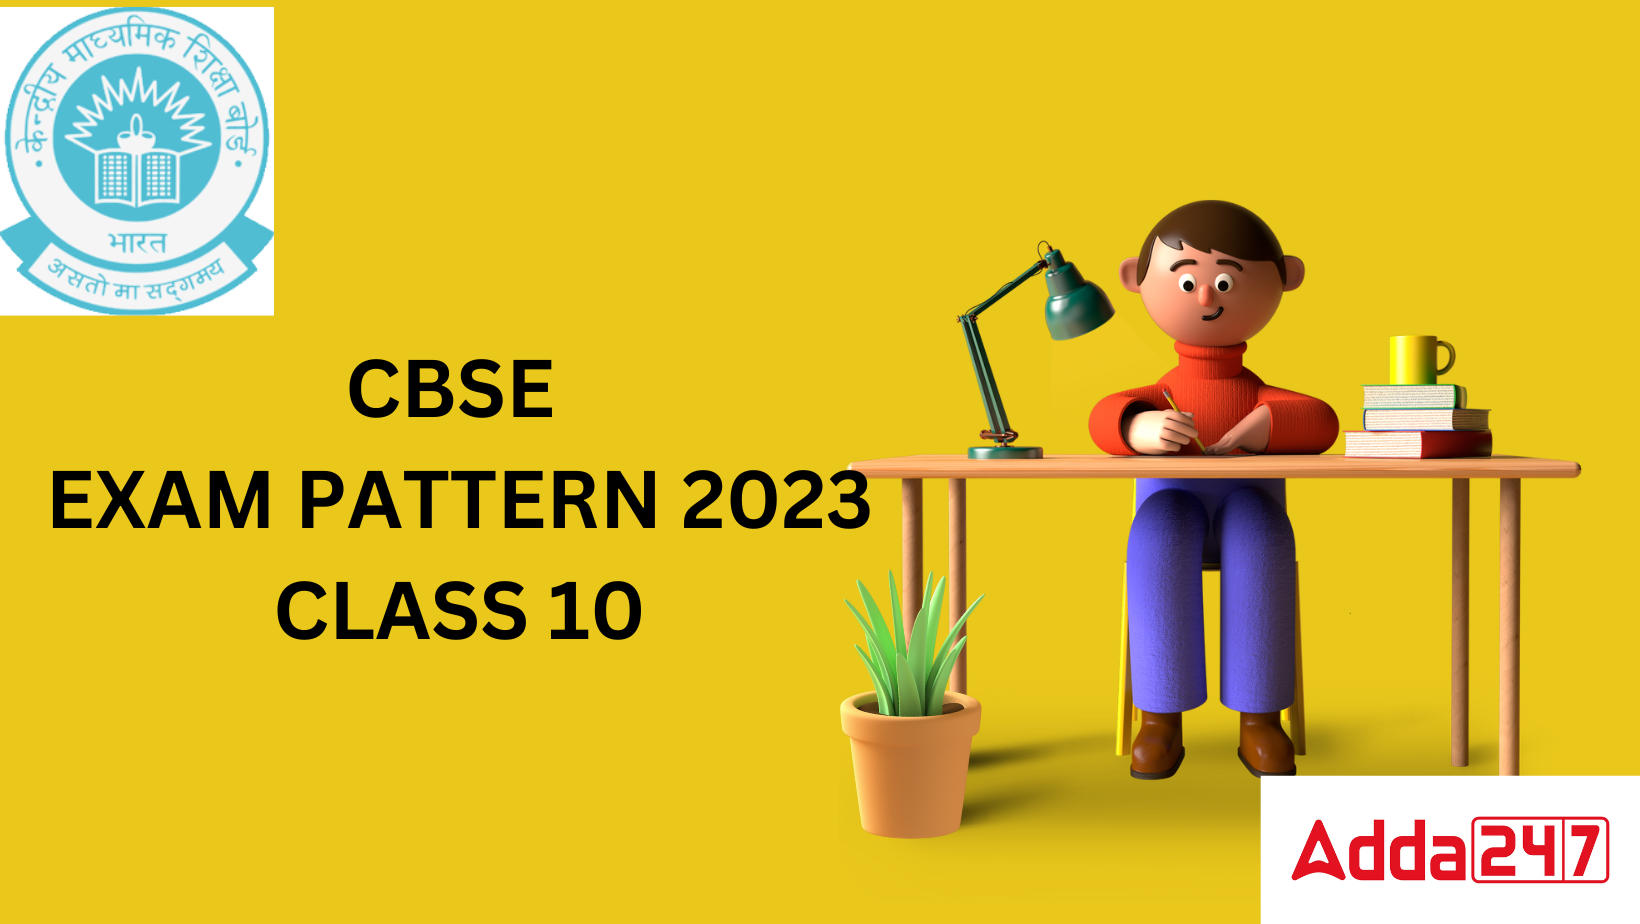 BSE EXAM PATTERN 2023 CLASS 10